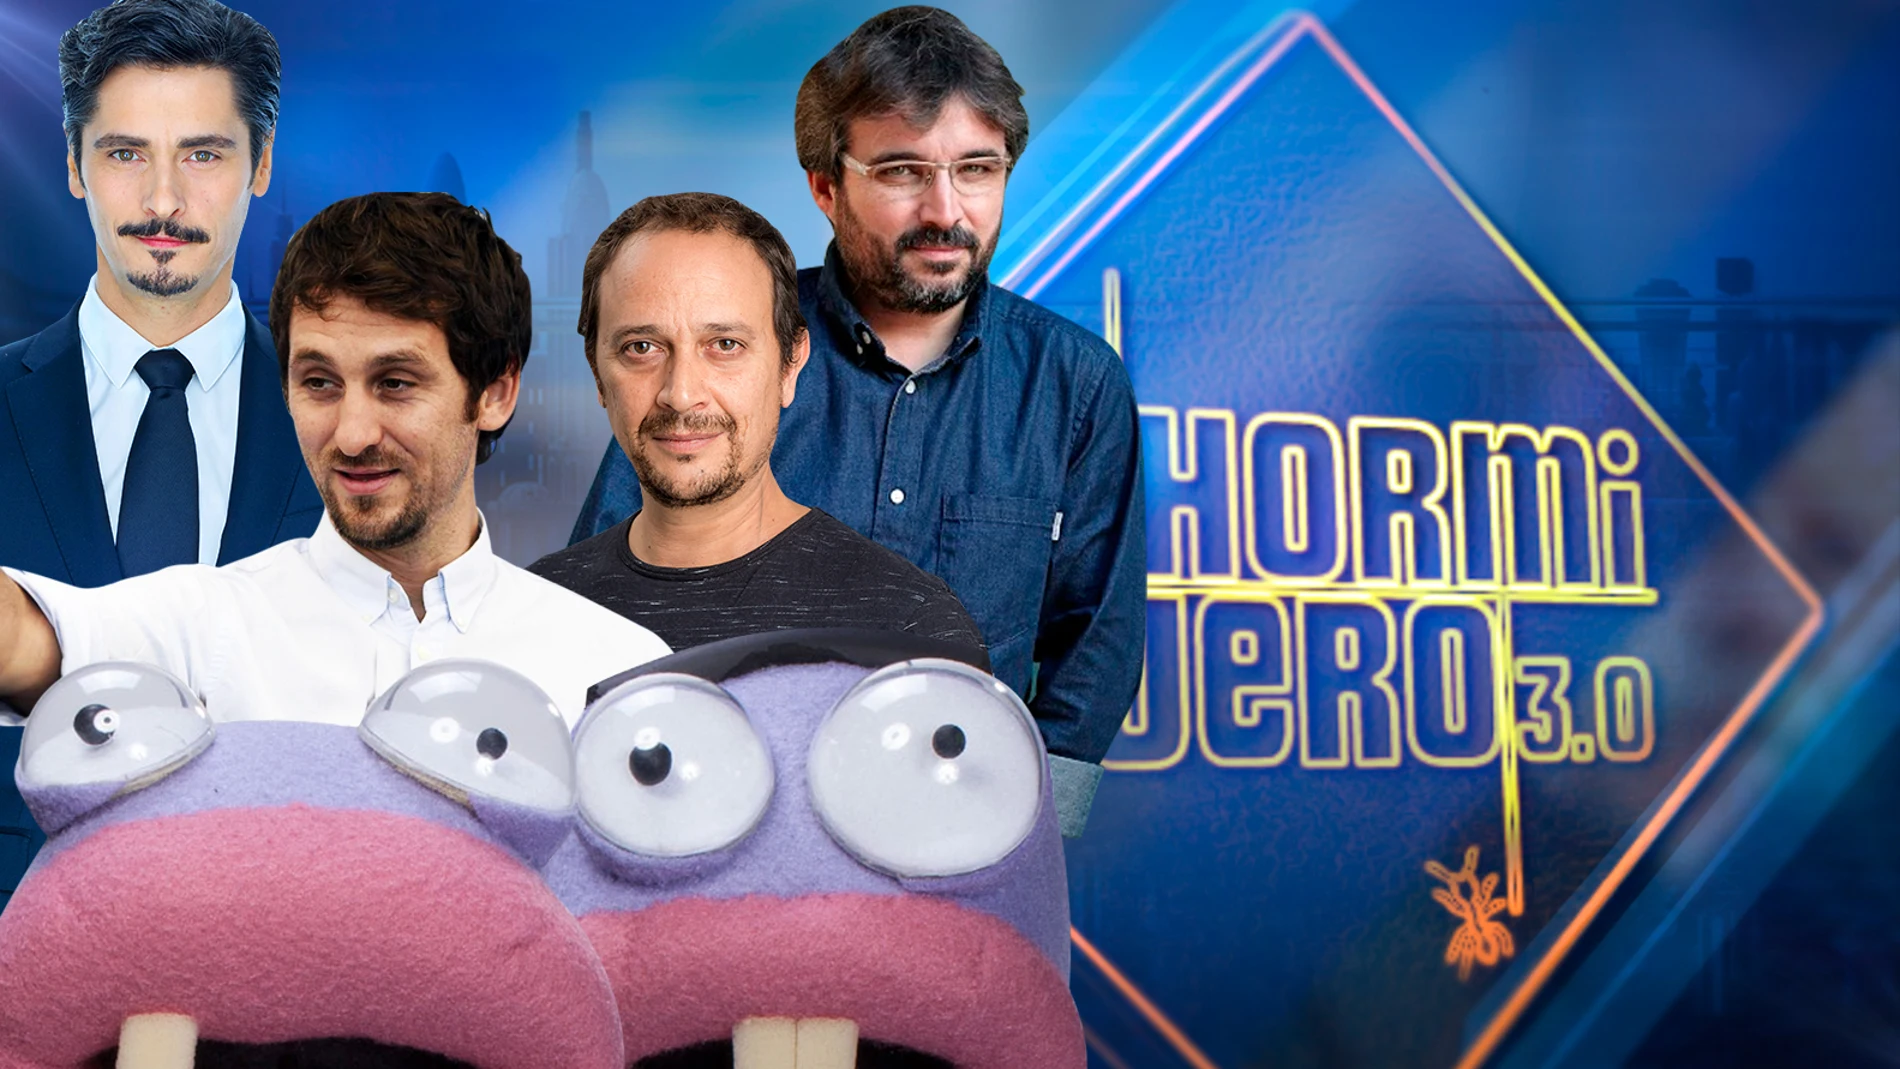 Tres de los mejores actores de nuestro país y el periodista Jordi Évole, invitados de lujo en 'El Hormiguero 3.0'